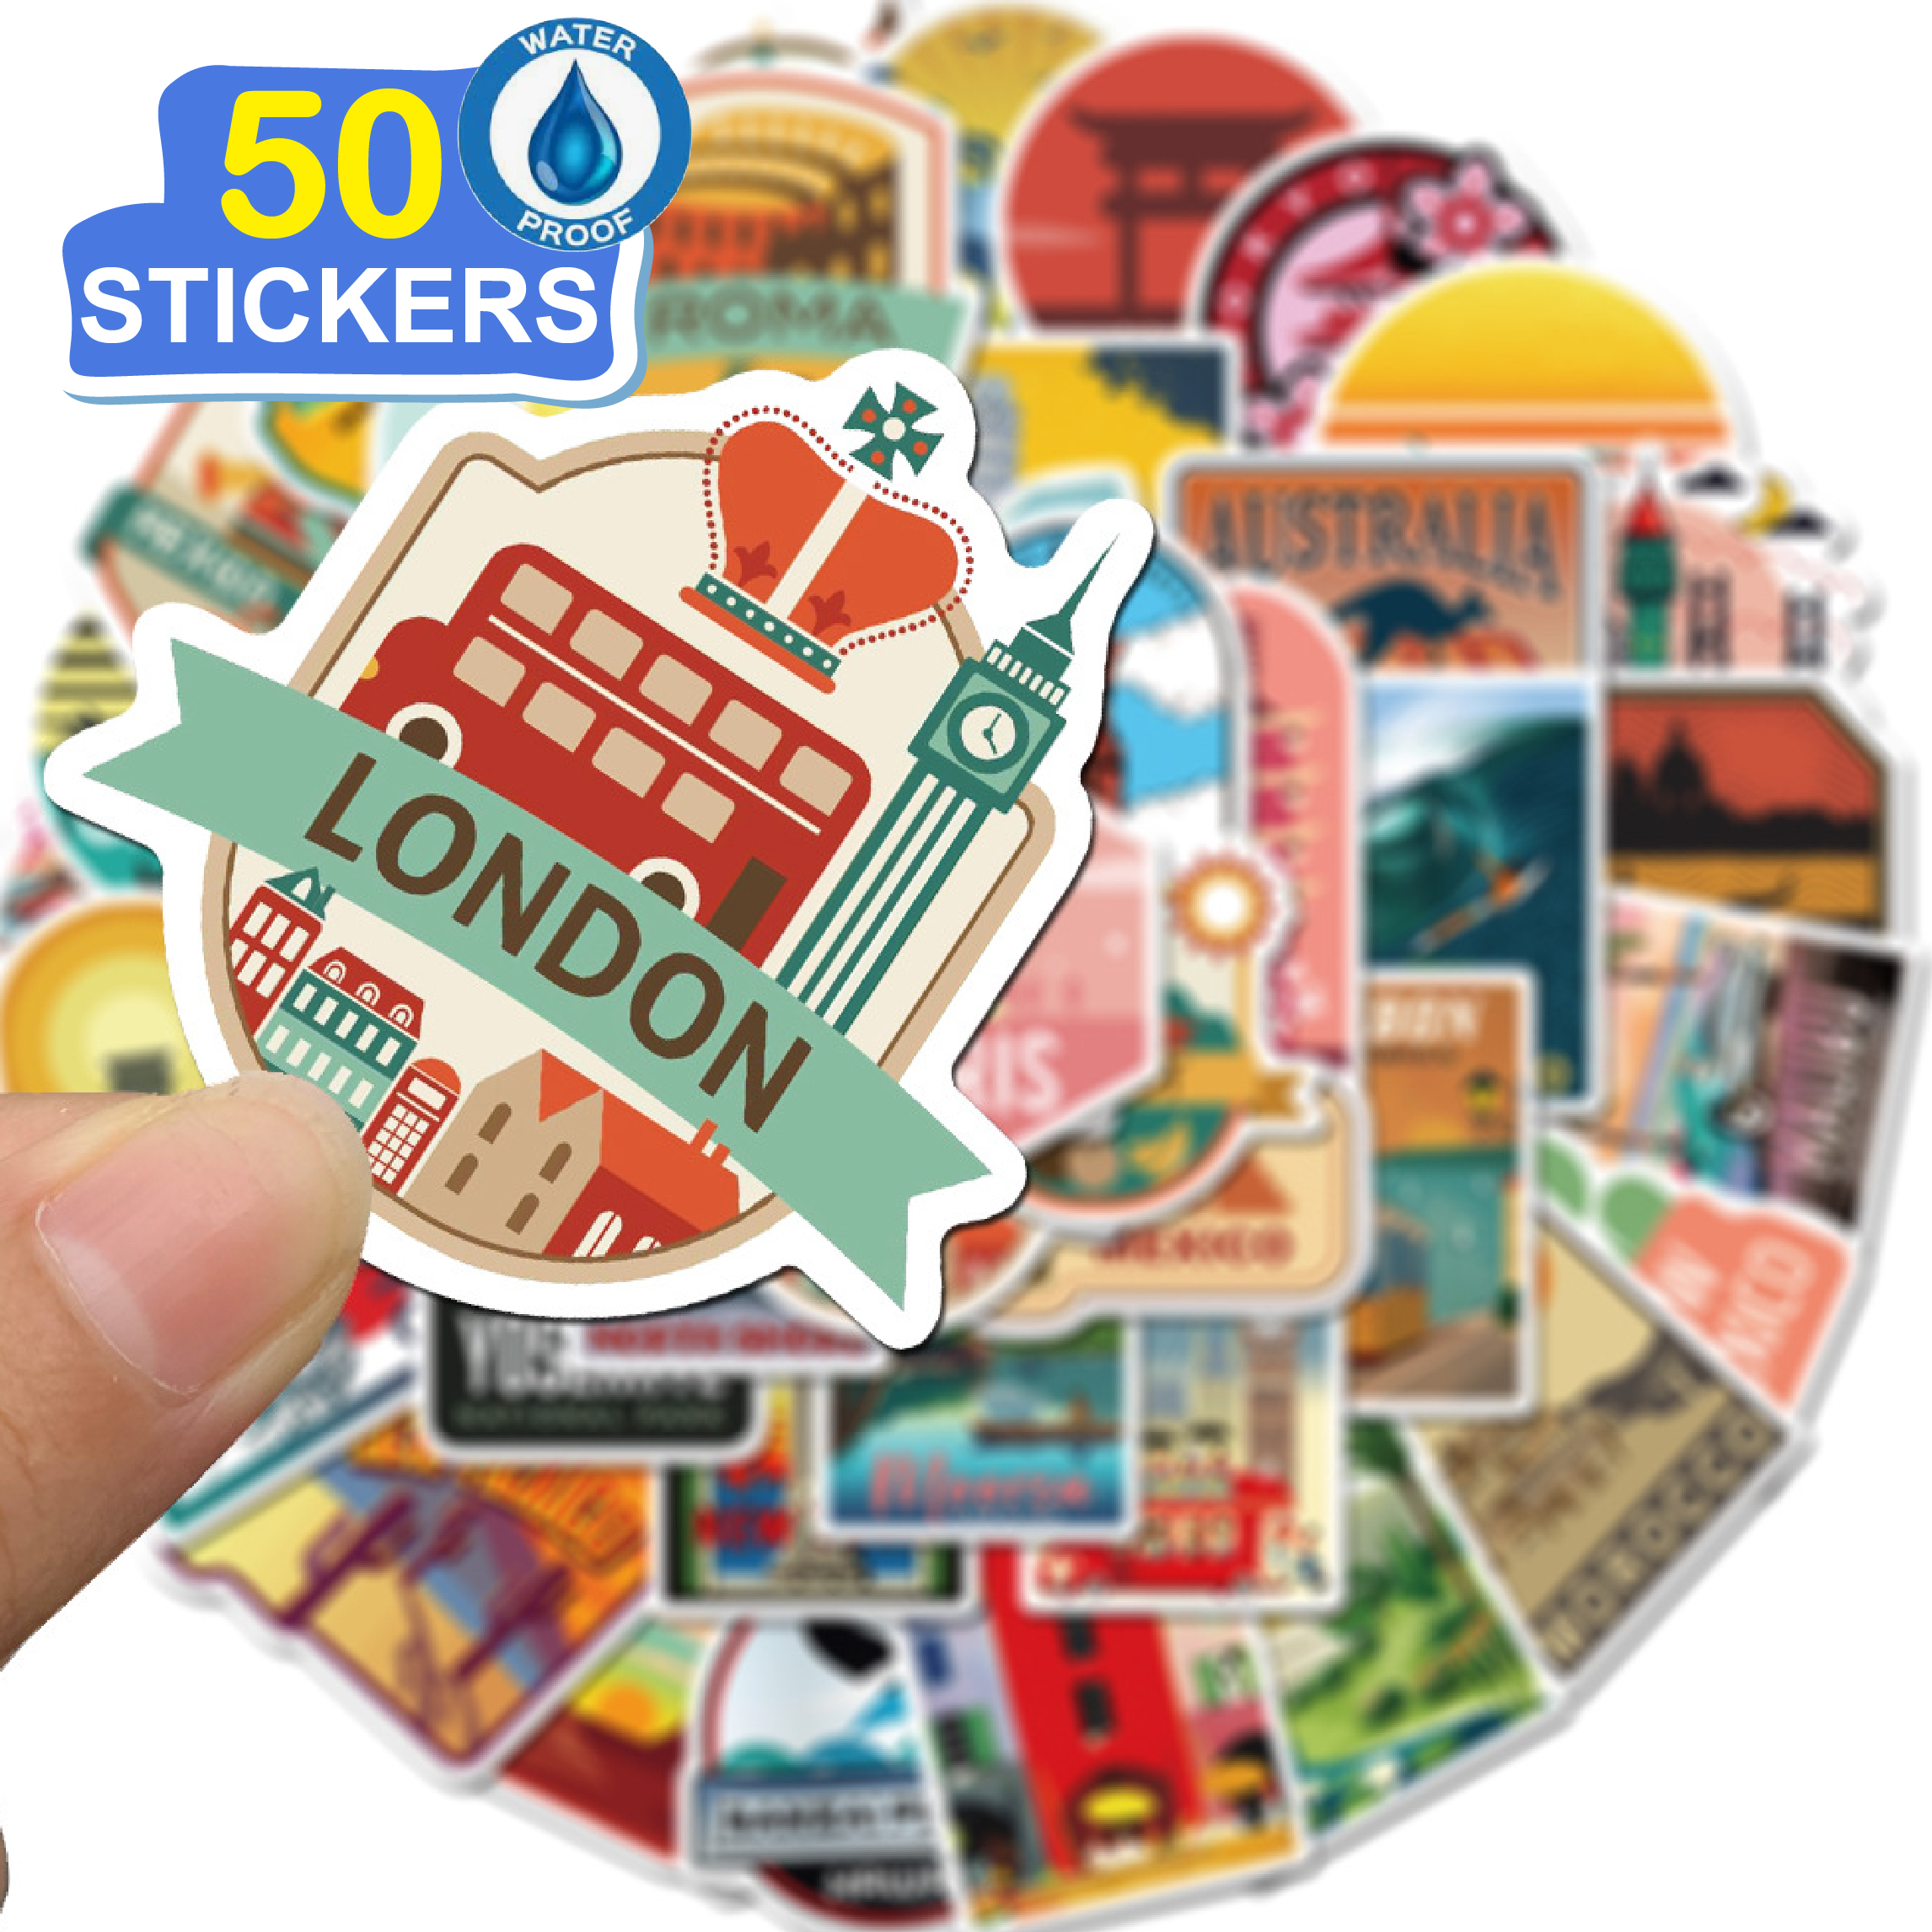 50 Stickers Vintage Travel Label trang trí laptop, điện thoại, ipad, cốc nước, sổ tay, vali du lịch, scooter, ván trược - Chống thấm nước - FiDi